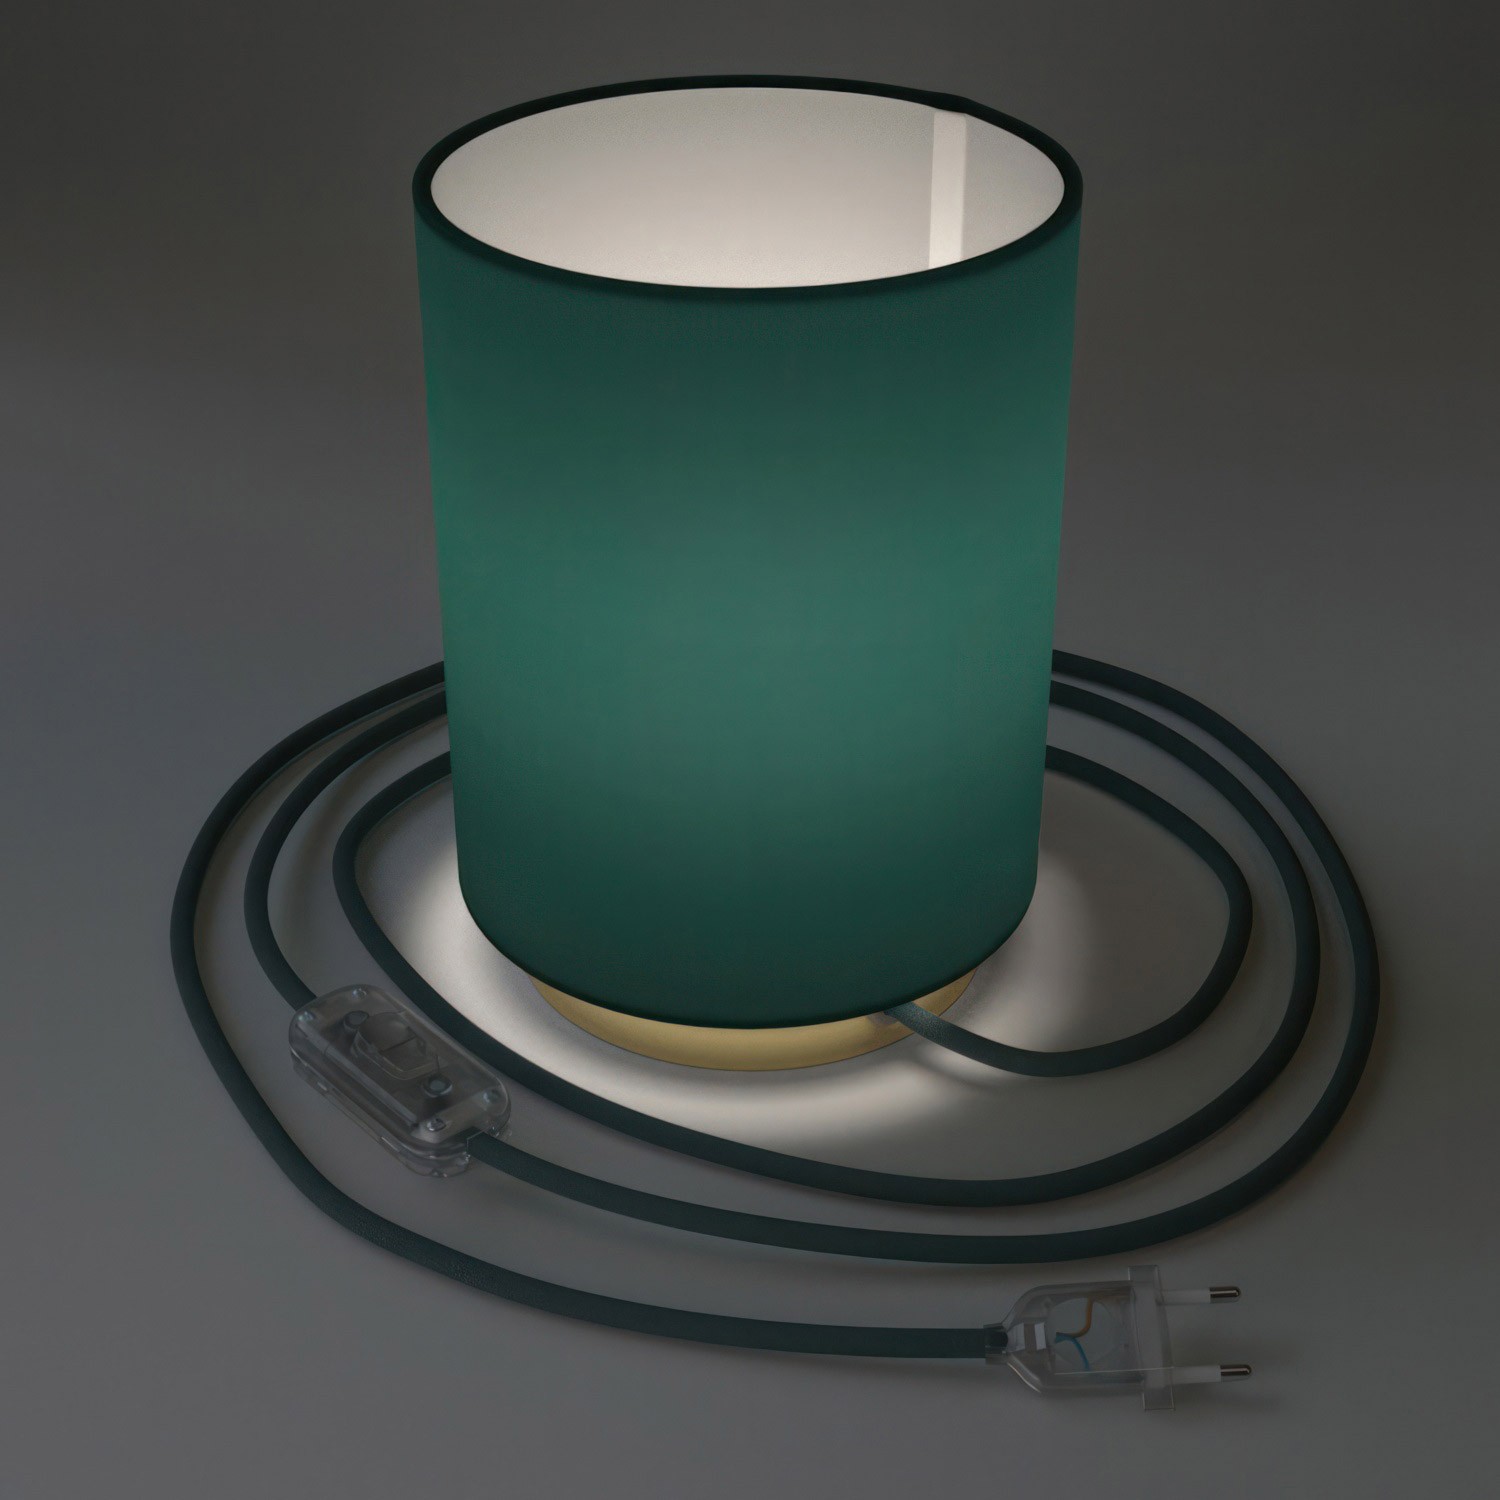 Posaluce i metal med Petrol Blue Cinette Cilindro lampeskærm, komplet med stofkabel, afbryder og 2-polet stik